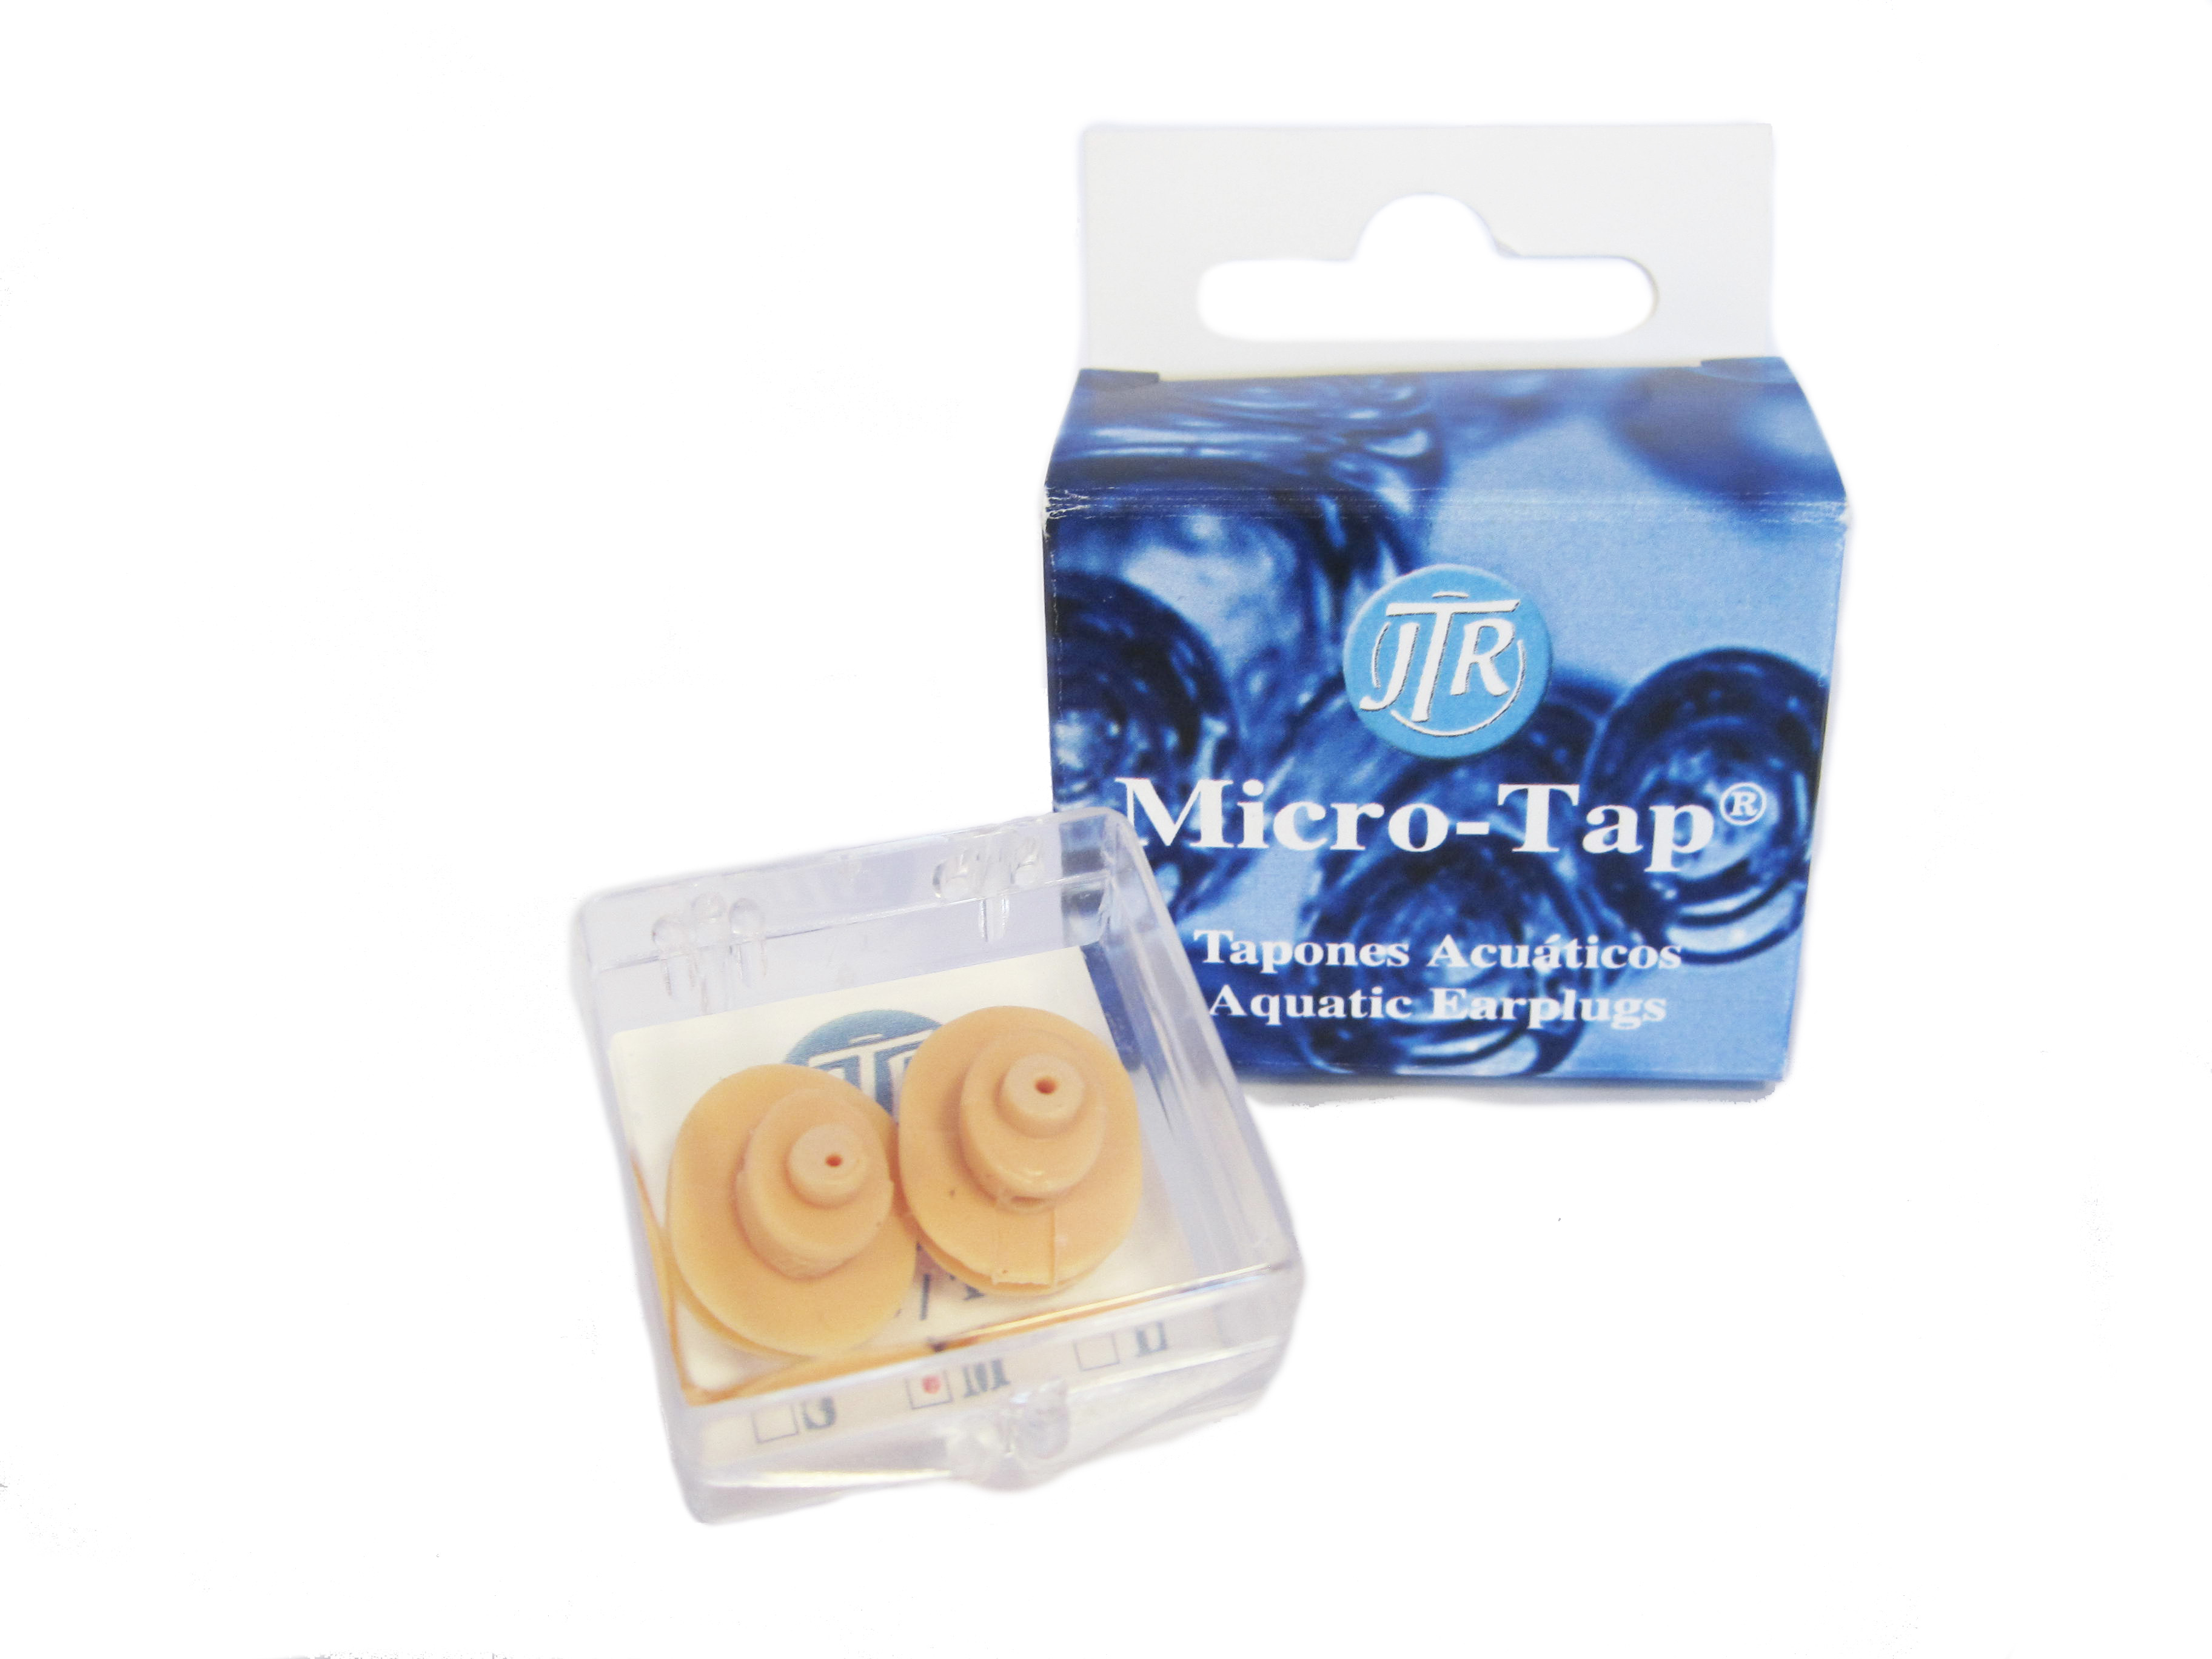 Los tapones acuáticos Micro-Tap nos permitirán proteger el oído del agua evitando los riesgos que conllevan los tapones tradicionales. Podremos bucear o realizar cualquier actividad acuática y compensar presiones sin que el tímpano sufra daño alguno.